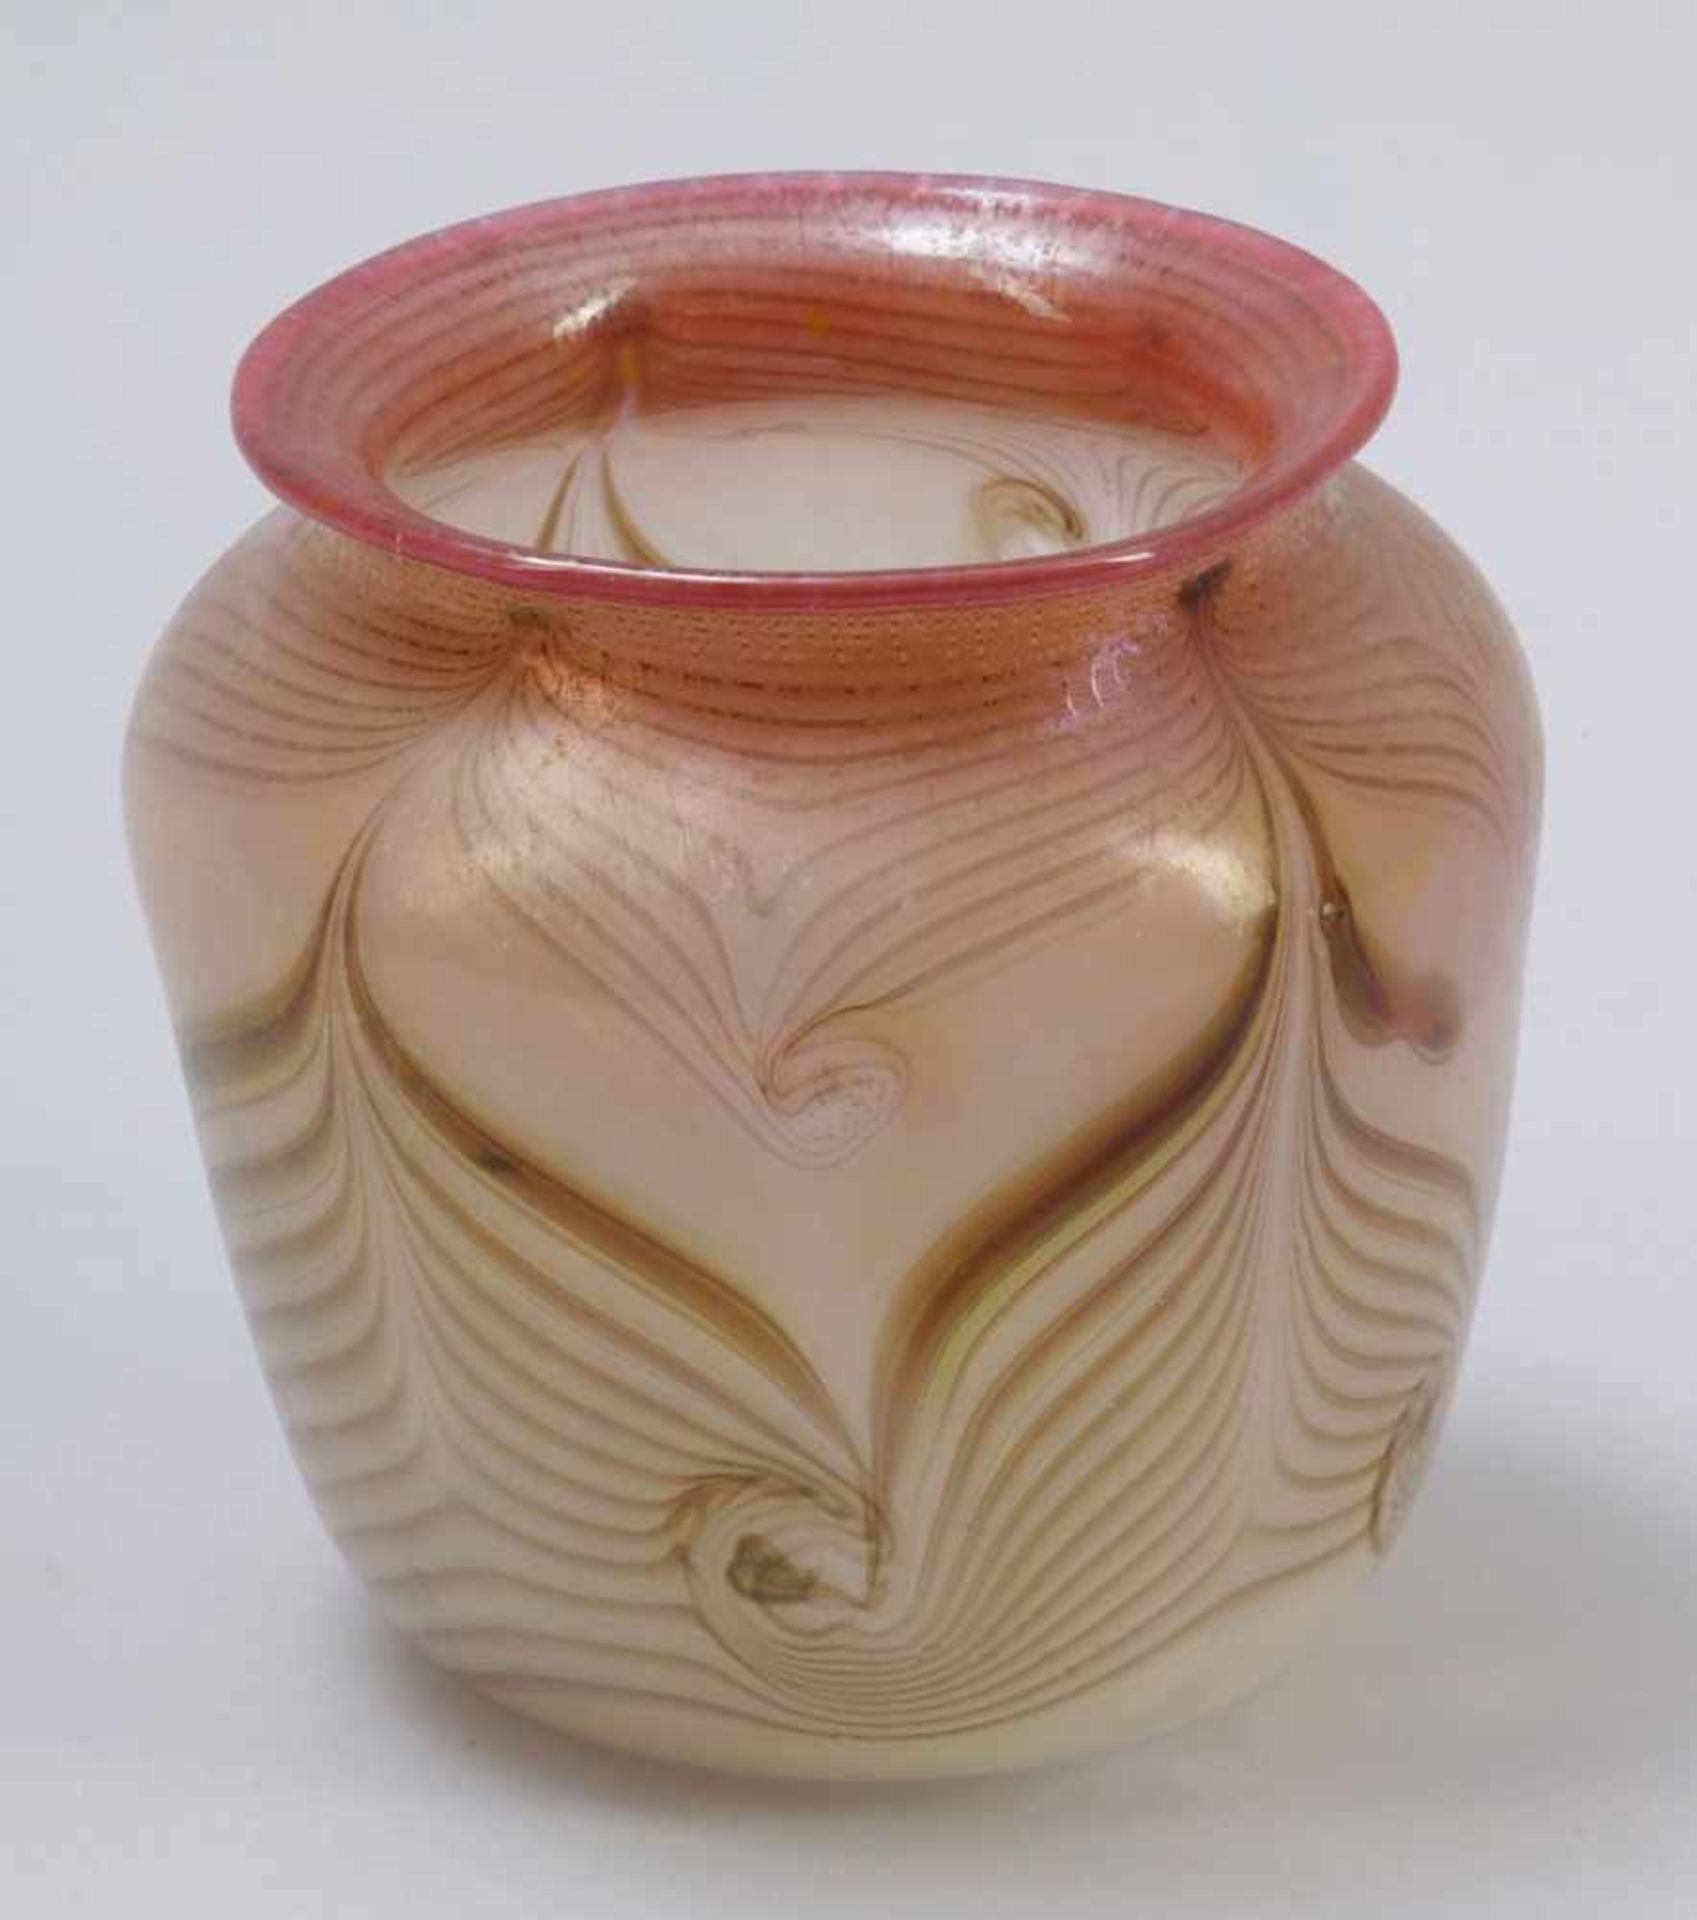 Vase Glashütte Eisch, Frauenau 1985. Farbloses Glas, rosafarbener Rand. Gezogene, schwarze Fäden.